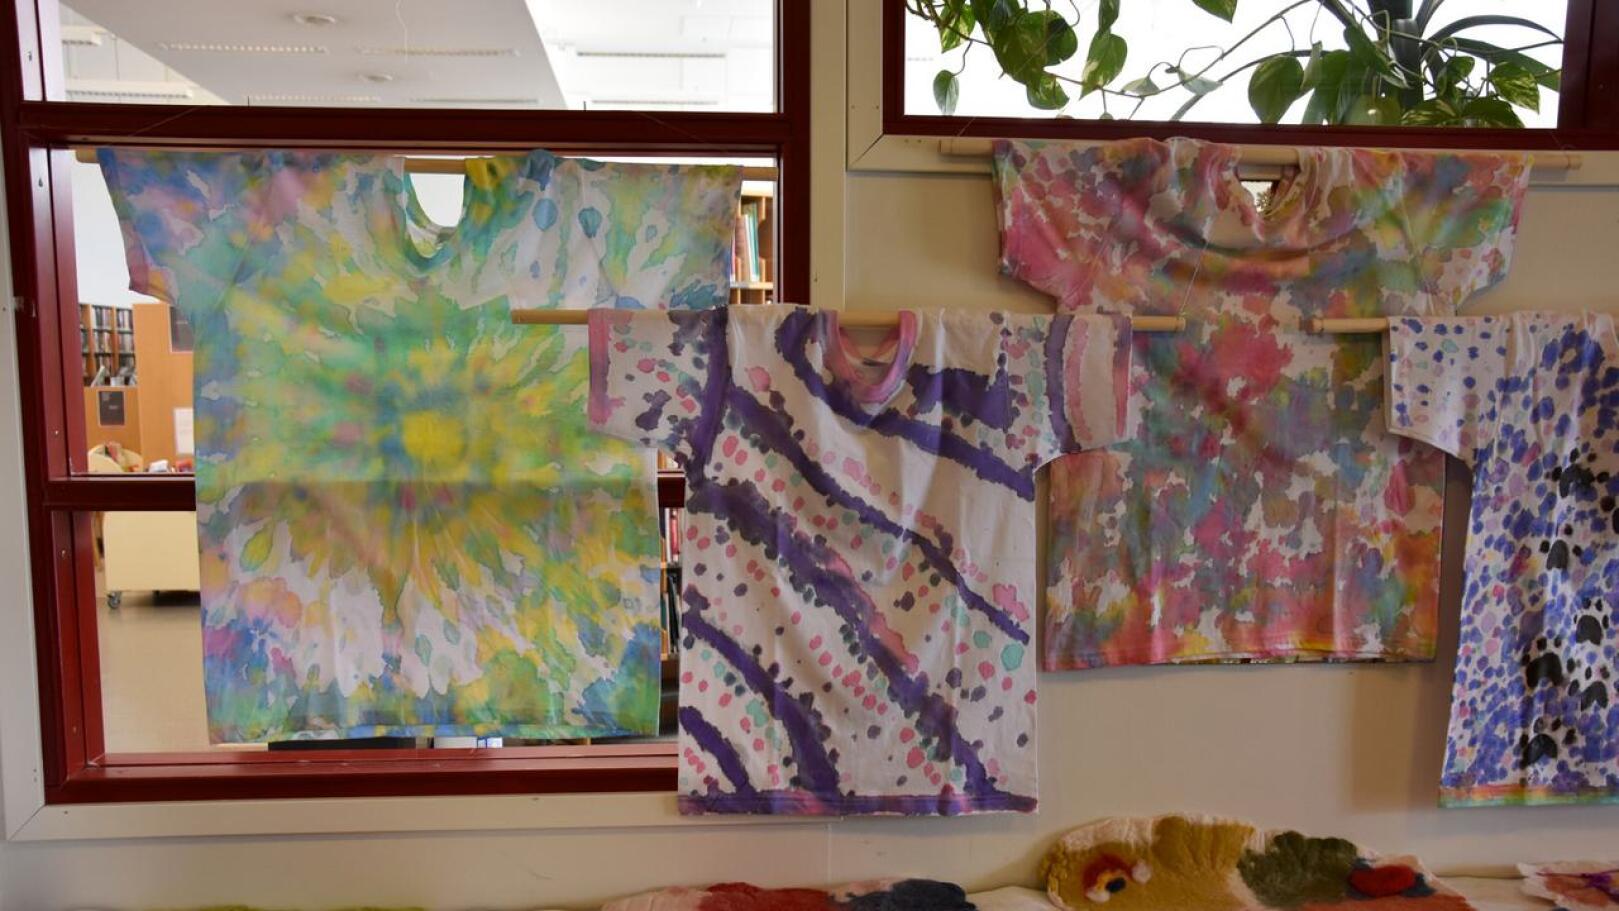 Väriä. Solmuvärjäys ja aurinkovärjäys koristelivat paidat Yli-Kannuksen kyläkeskuksessa pidetyssä taitopajassa, joka oli osa kevään opintoja.